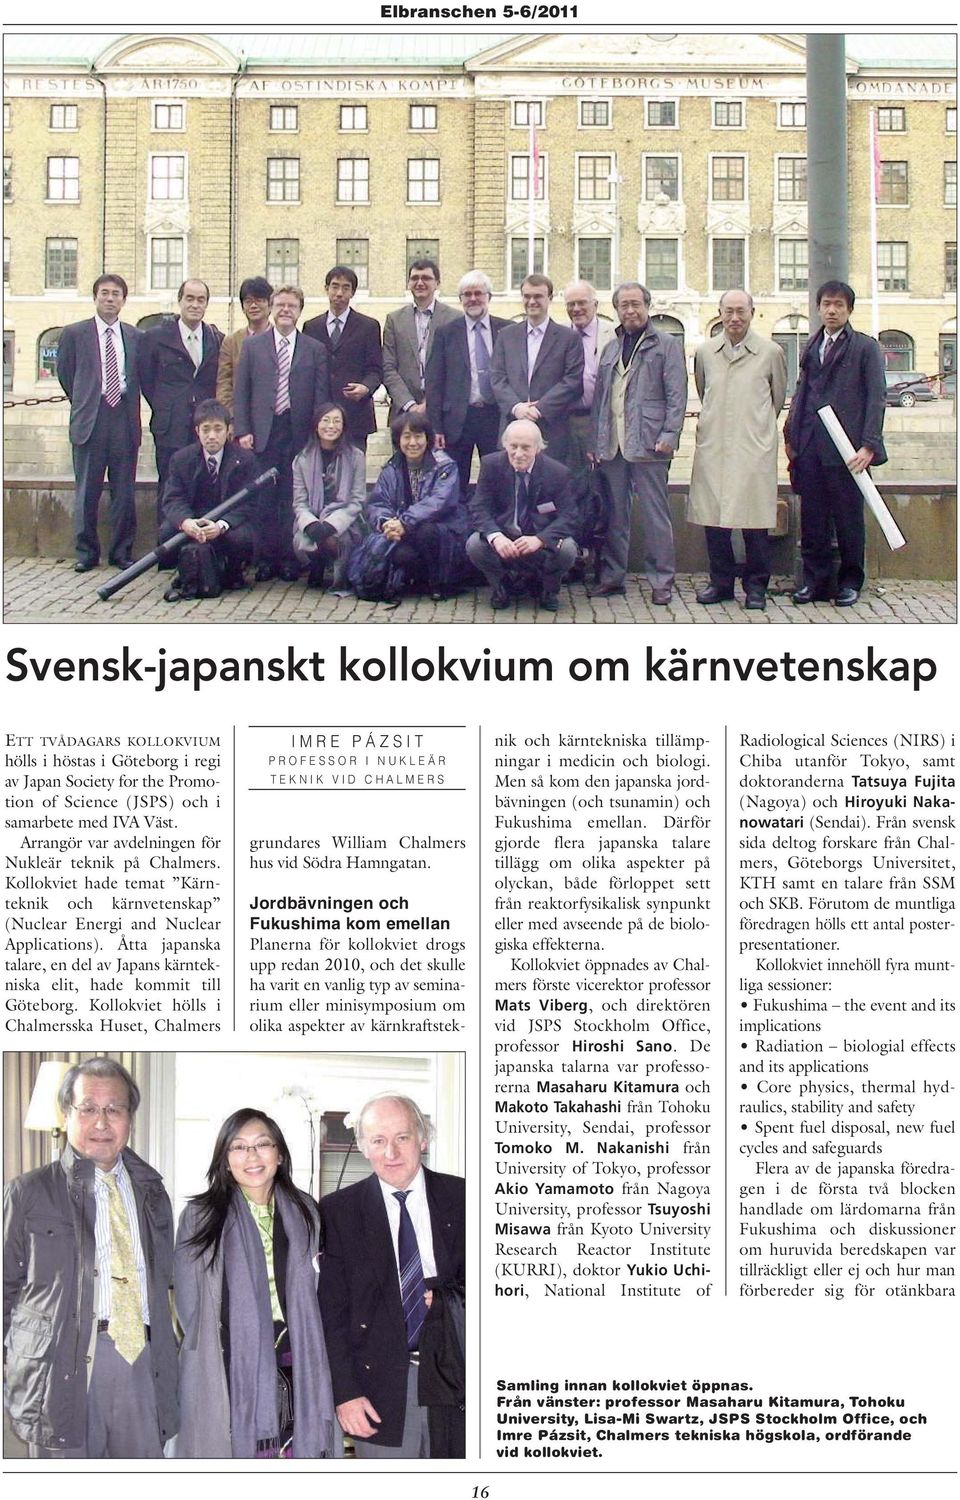 Åtta japanska talare, en del av Japans kärntekniska elit, hade kommit till Göteborg.